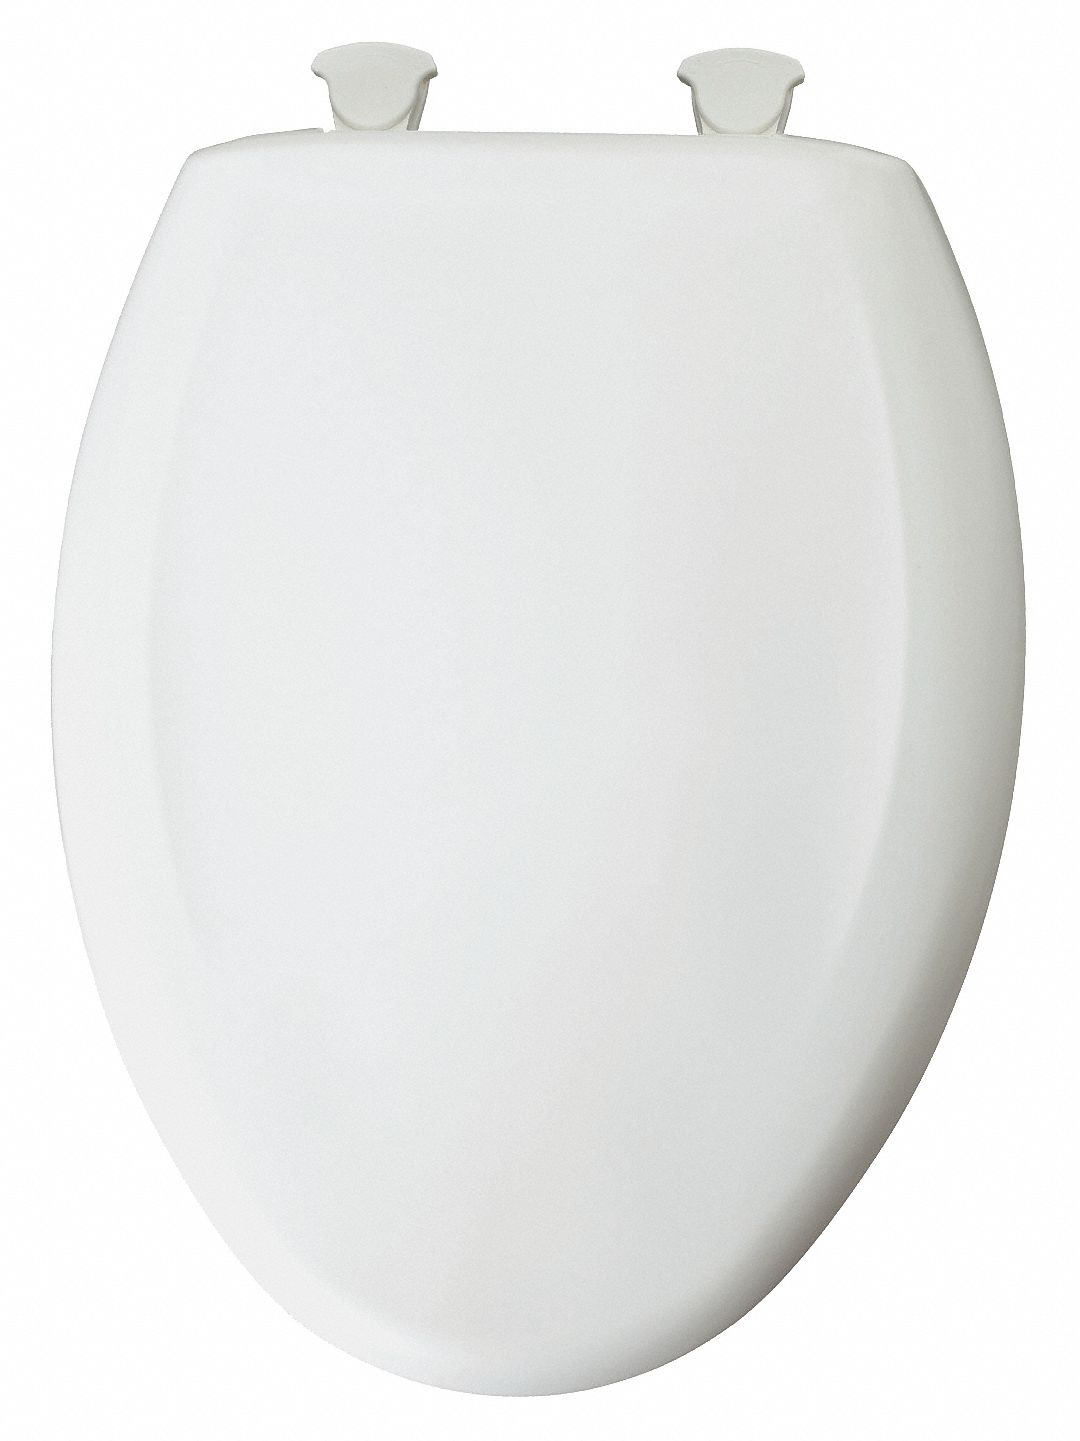 Benross Anika 92460 Soft Touch PVC Toilet Seat White {4N} 